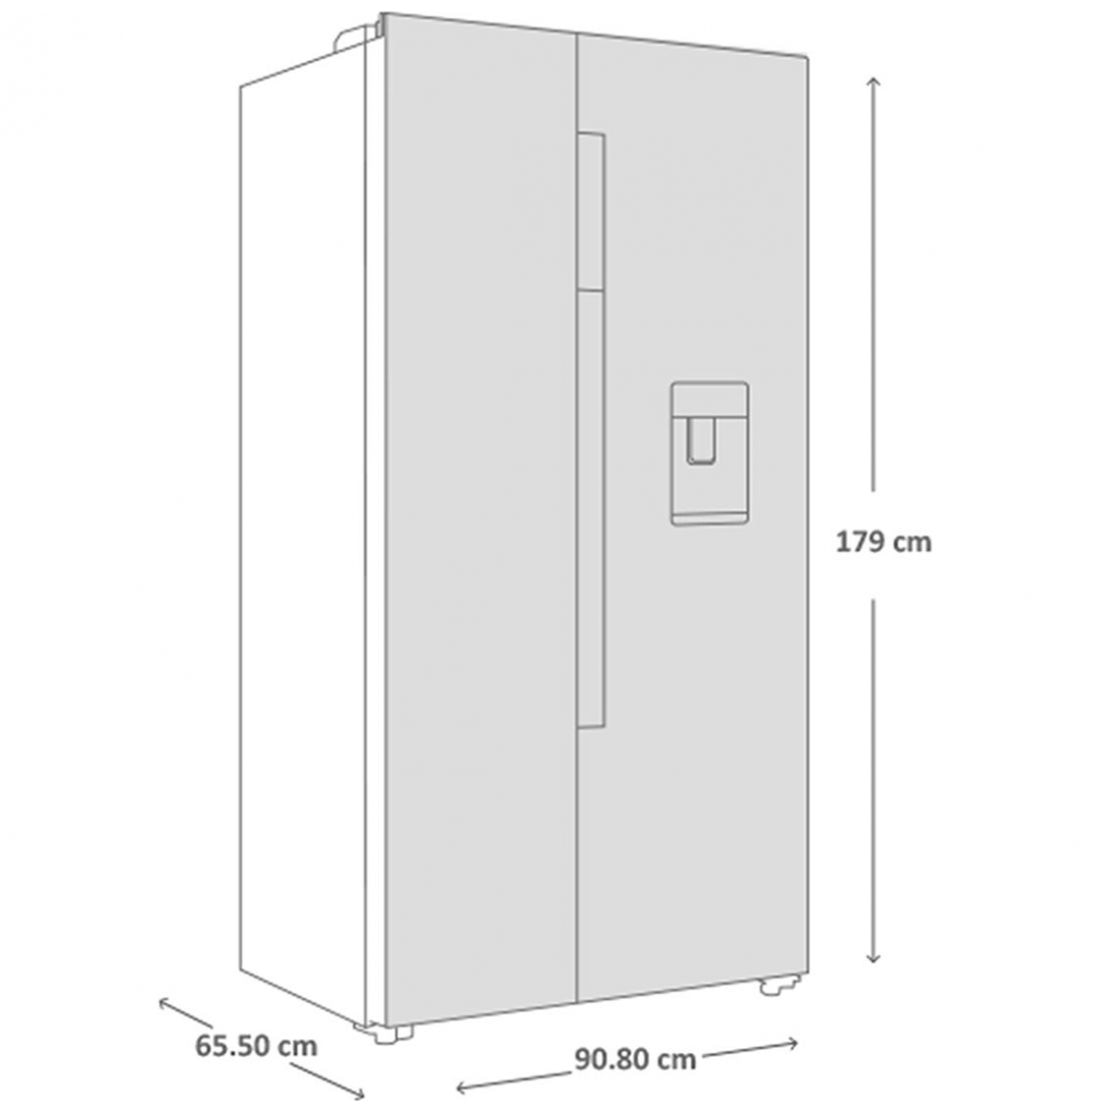 Refrigerador French Door 521 L (19 pies) Inoxidable Haier - HSM518HMNSS0, Refrigeradores, Refrigeración